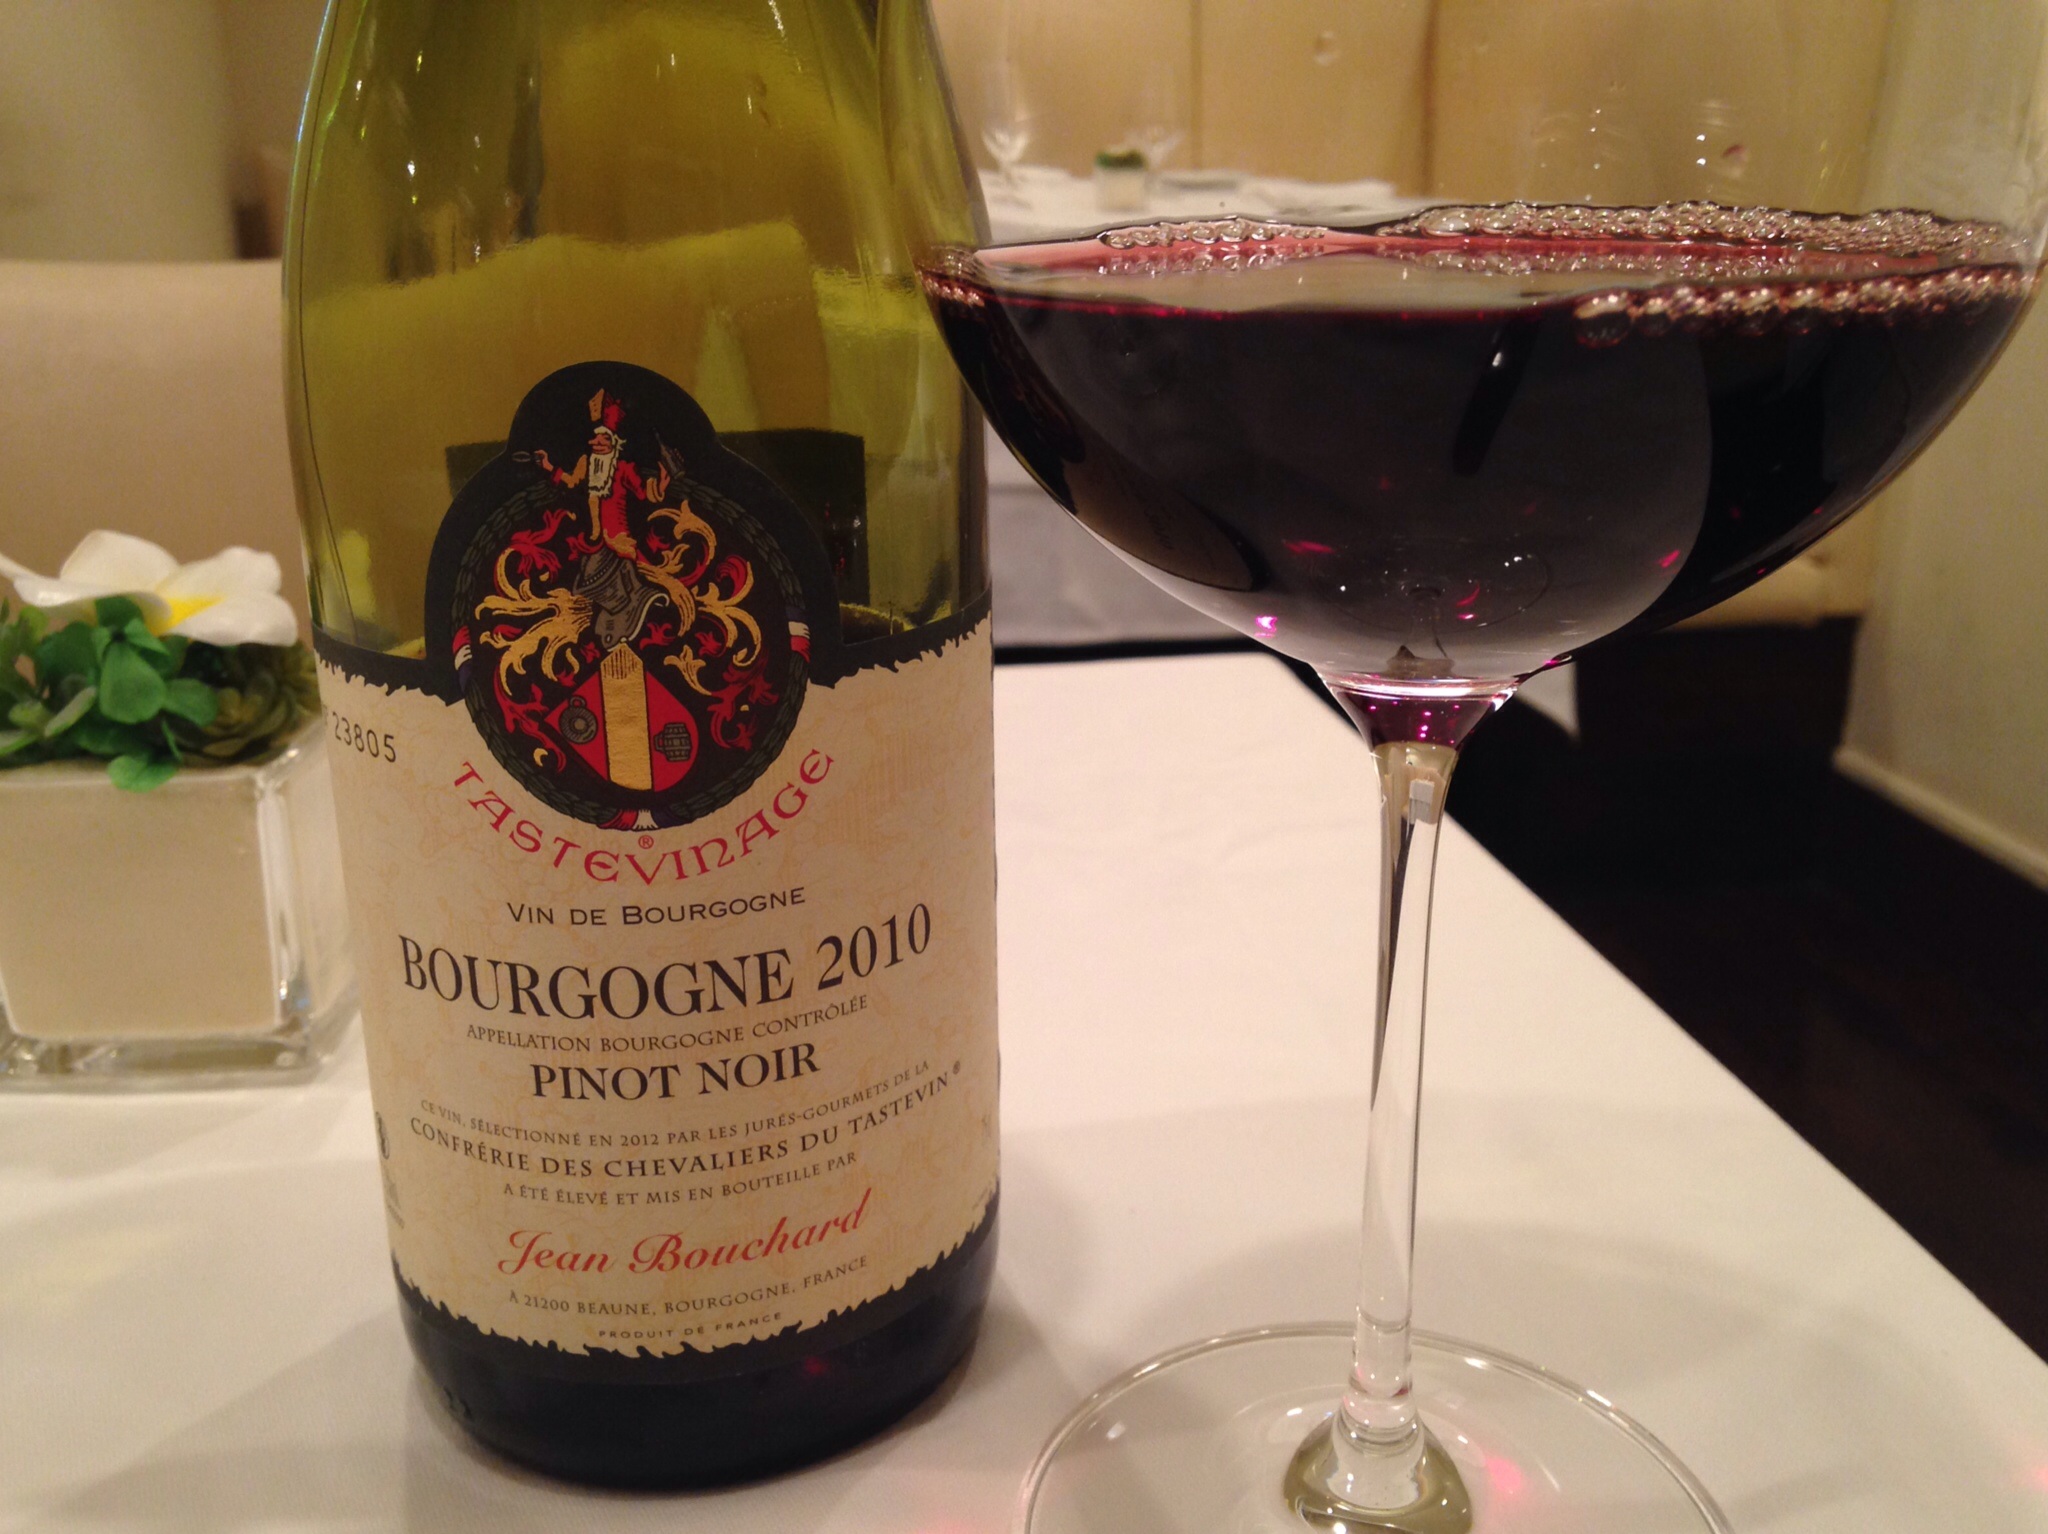 2010 Bourgogne Pinot Noir